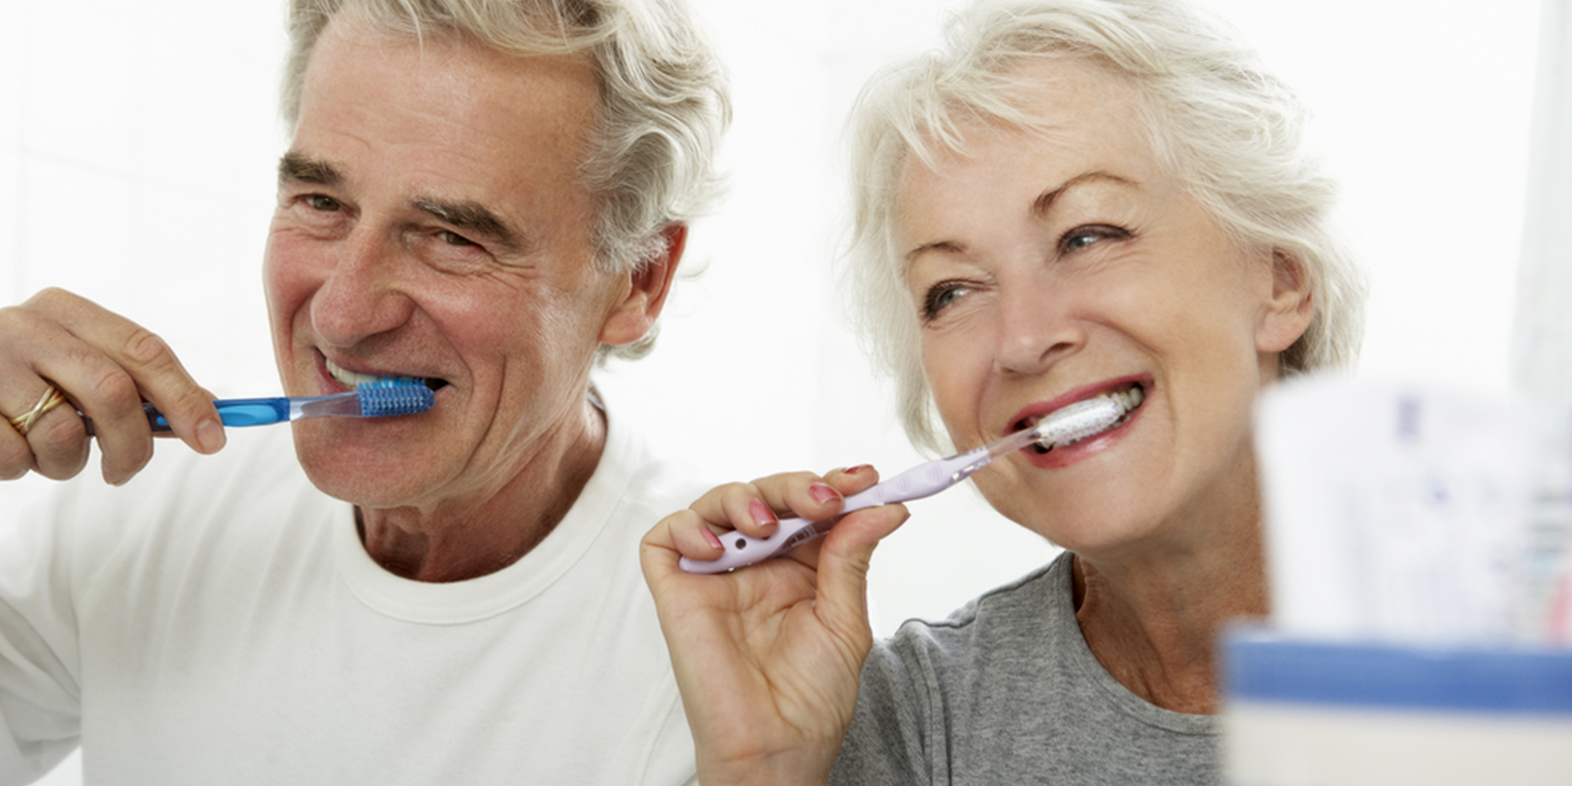 odontogeriatria senhores escovando os dentes saúde bucal